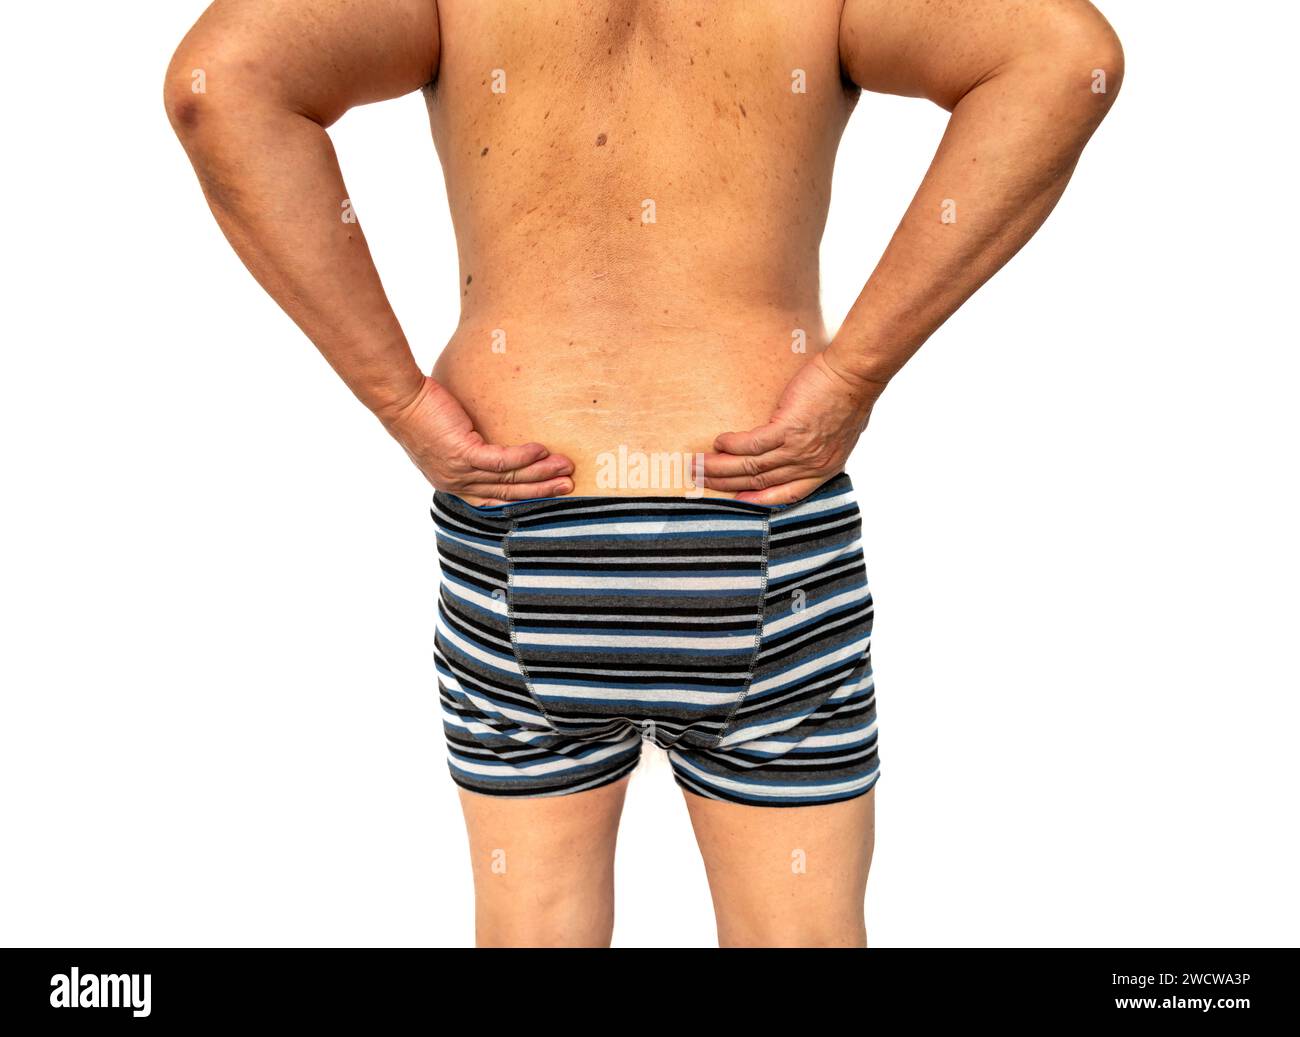 Eine vollständige Rückansicht einer Person, die an Rückenschmerzen leidet, isoliert in weiß. Stockfoto